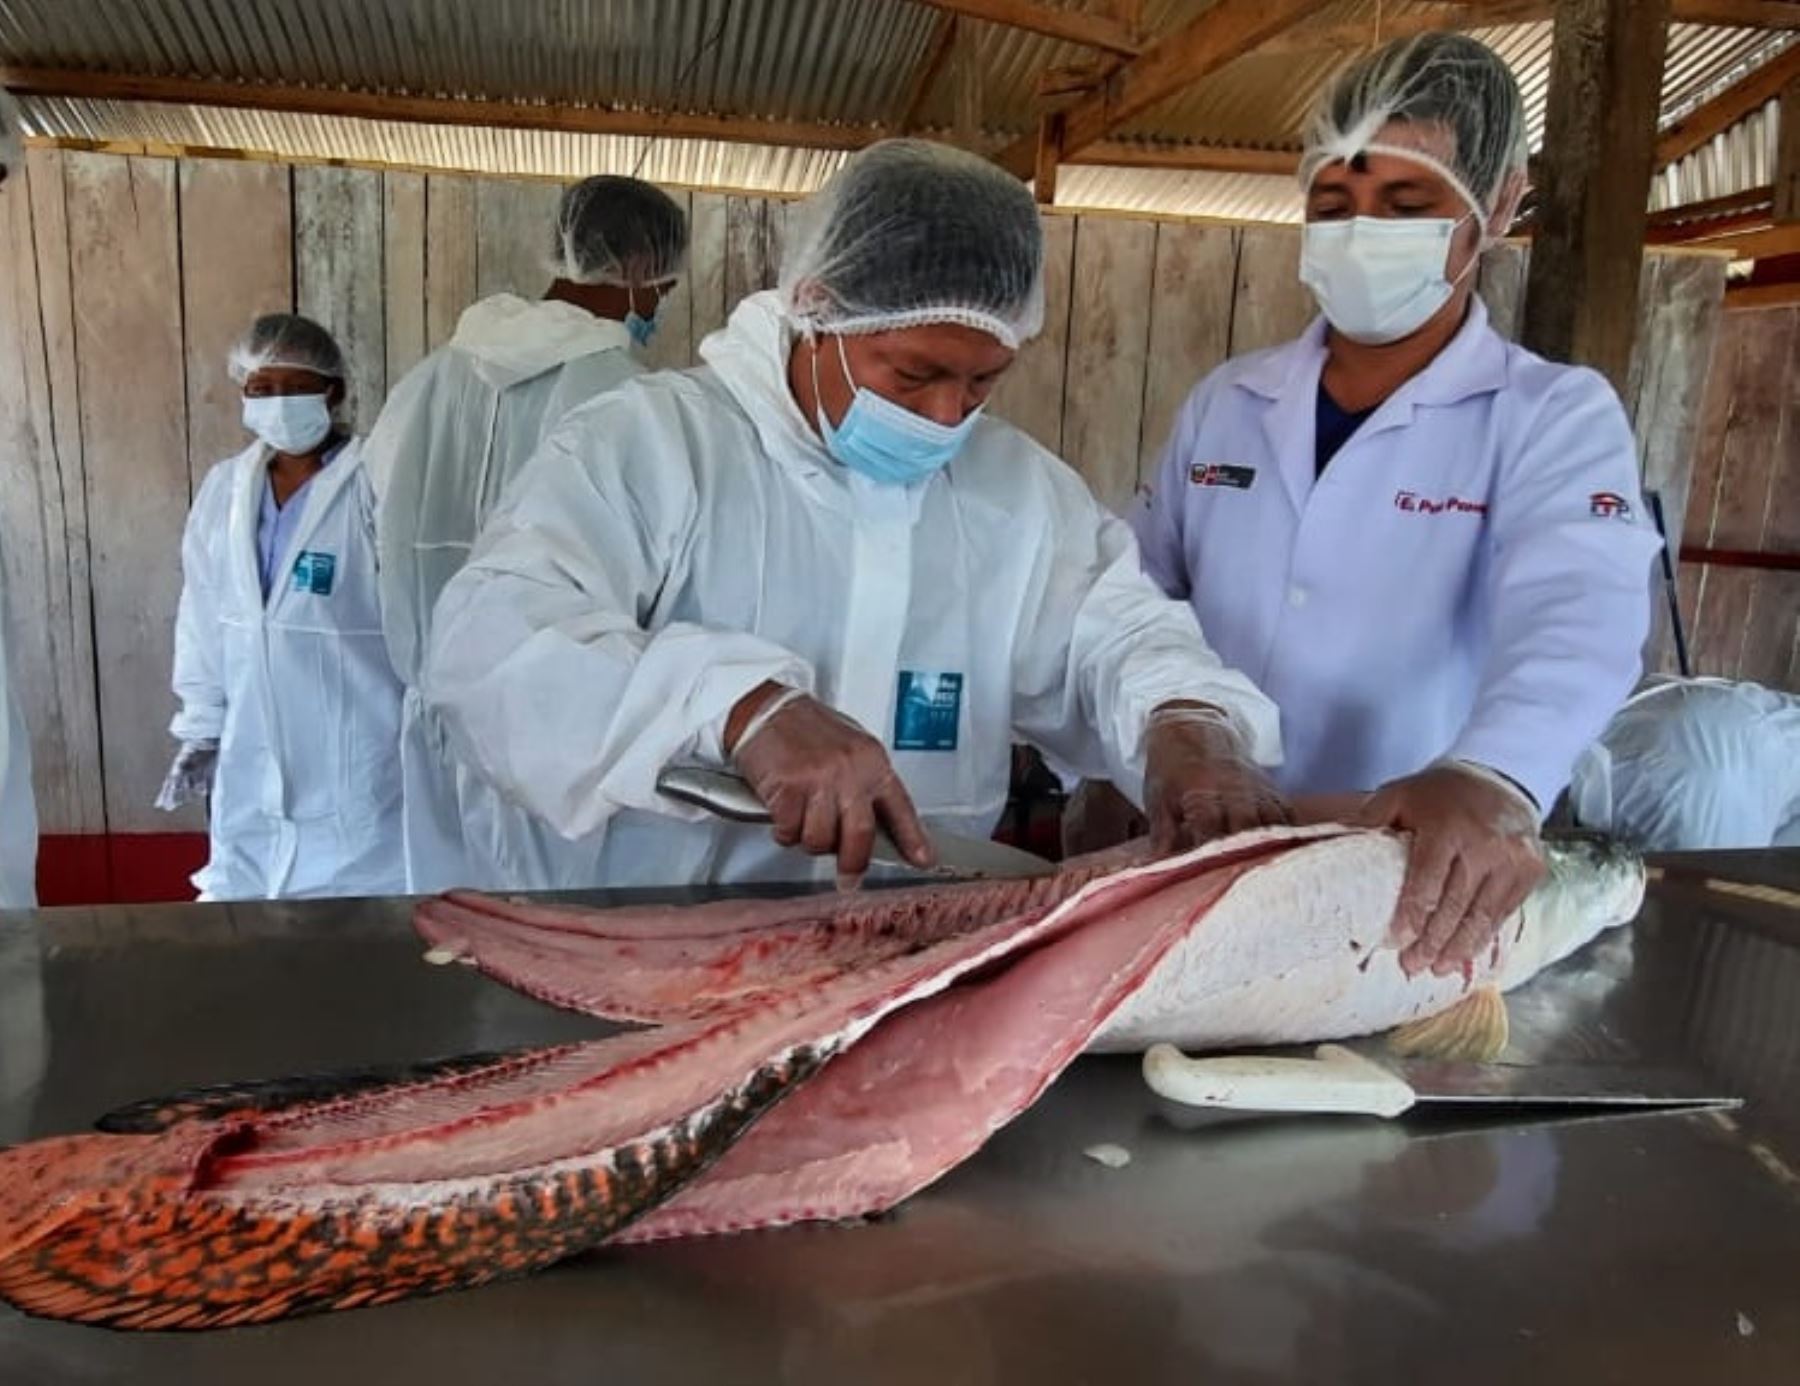 Emprendedores indígenas de la comunidad de Yanayacu, ubicada en Loreto, innovarán con chorizos y hamburguesas elaboradas con carne de paiche, el emblemático pez amazónico. ANDINA/Difusión